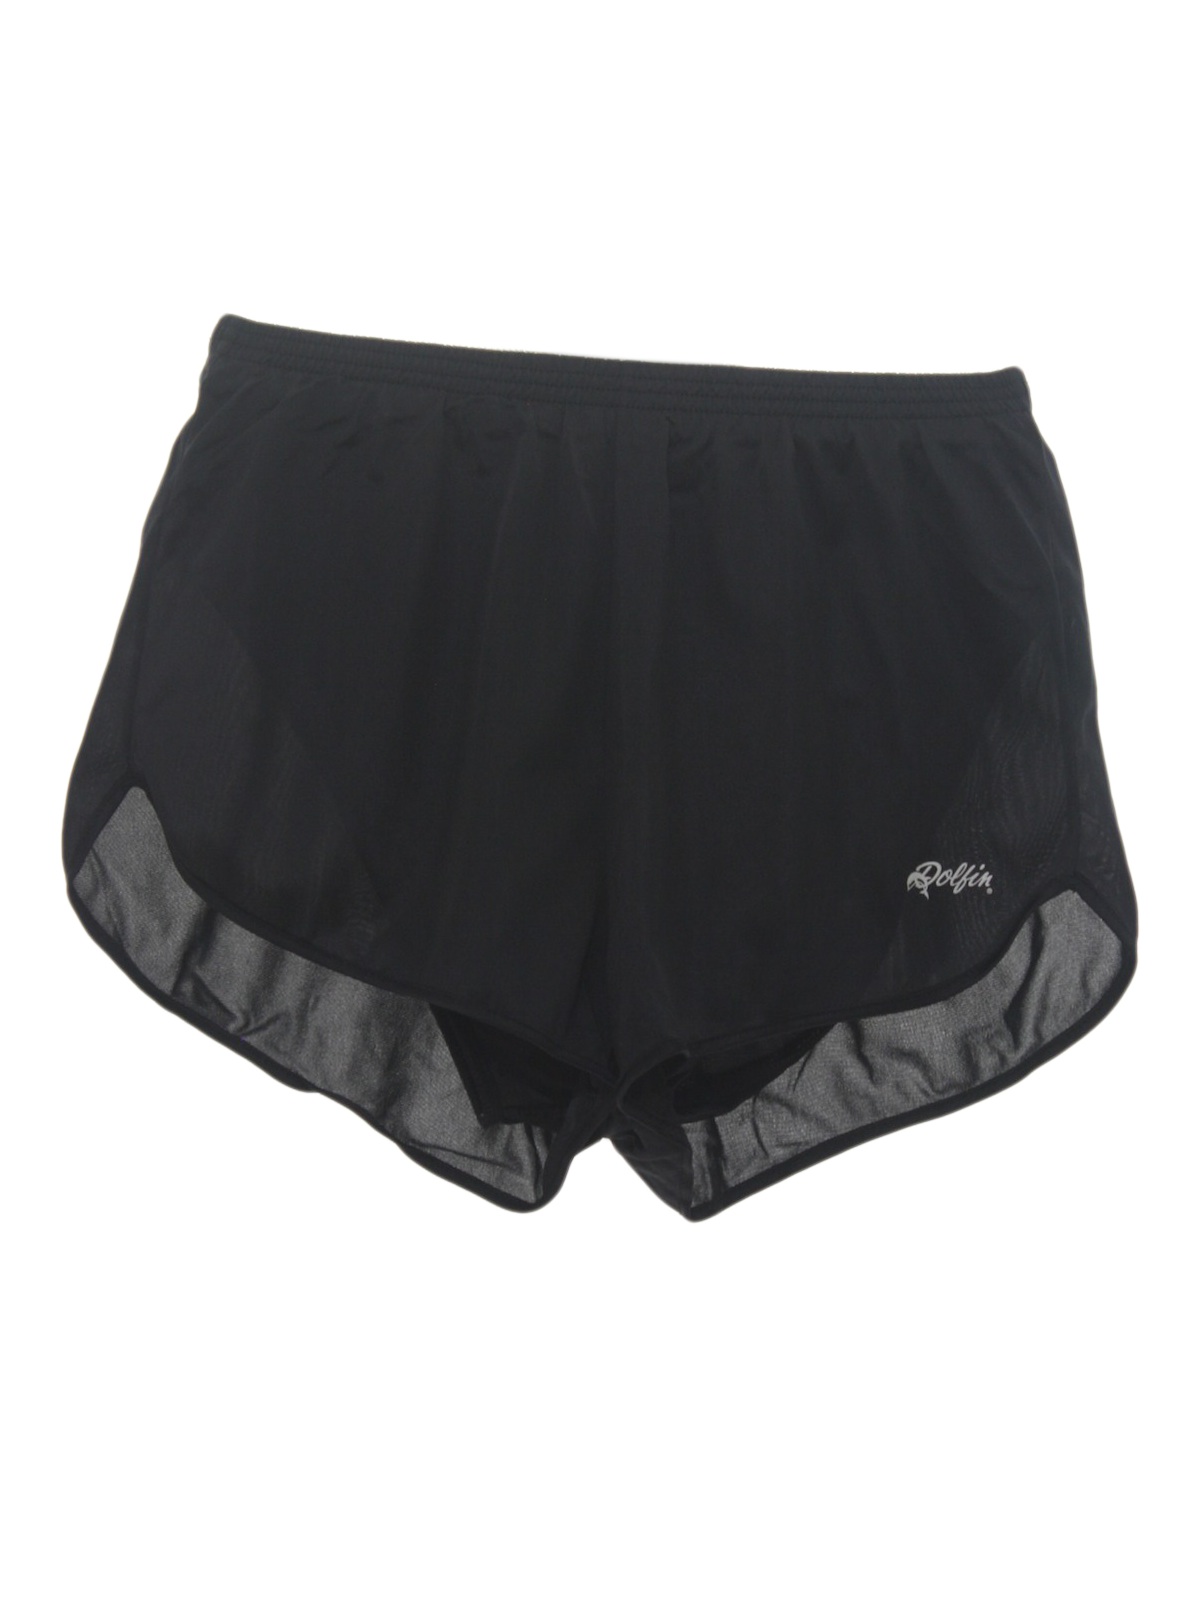 Vintage Dolfin 90's Shorts: 90s -Dolfin- Mens black on black, nylon ...